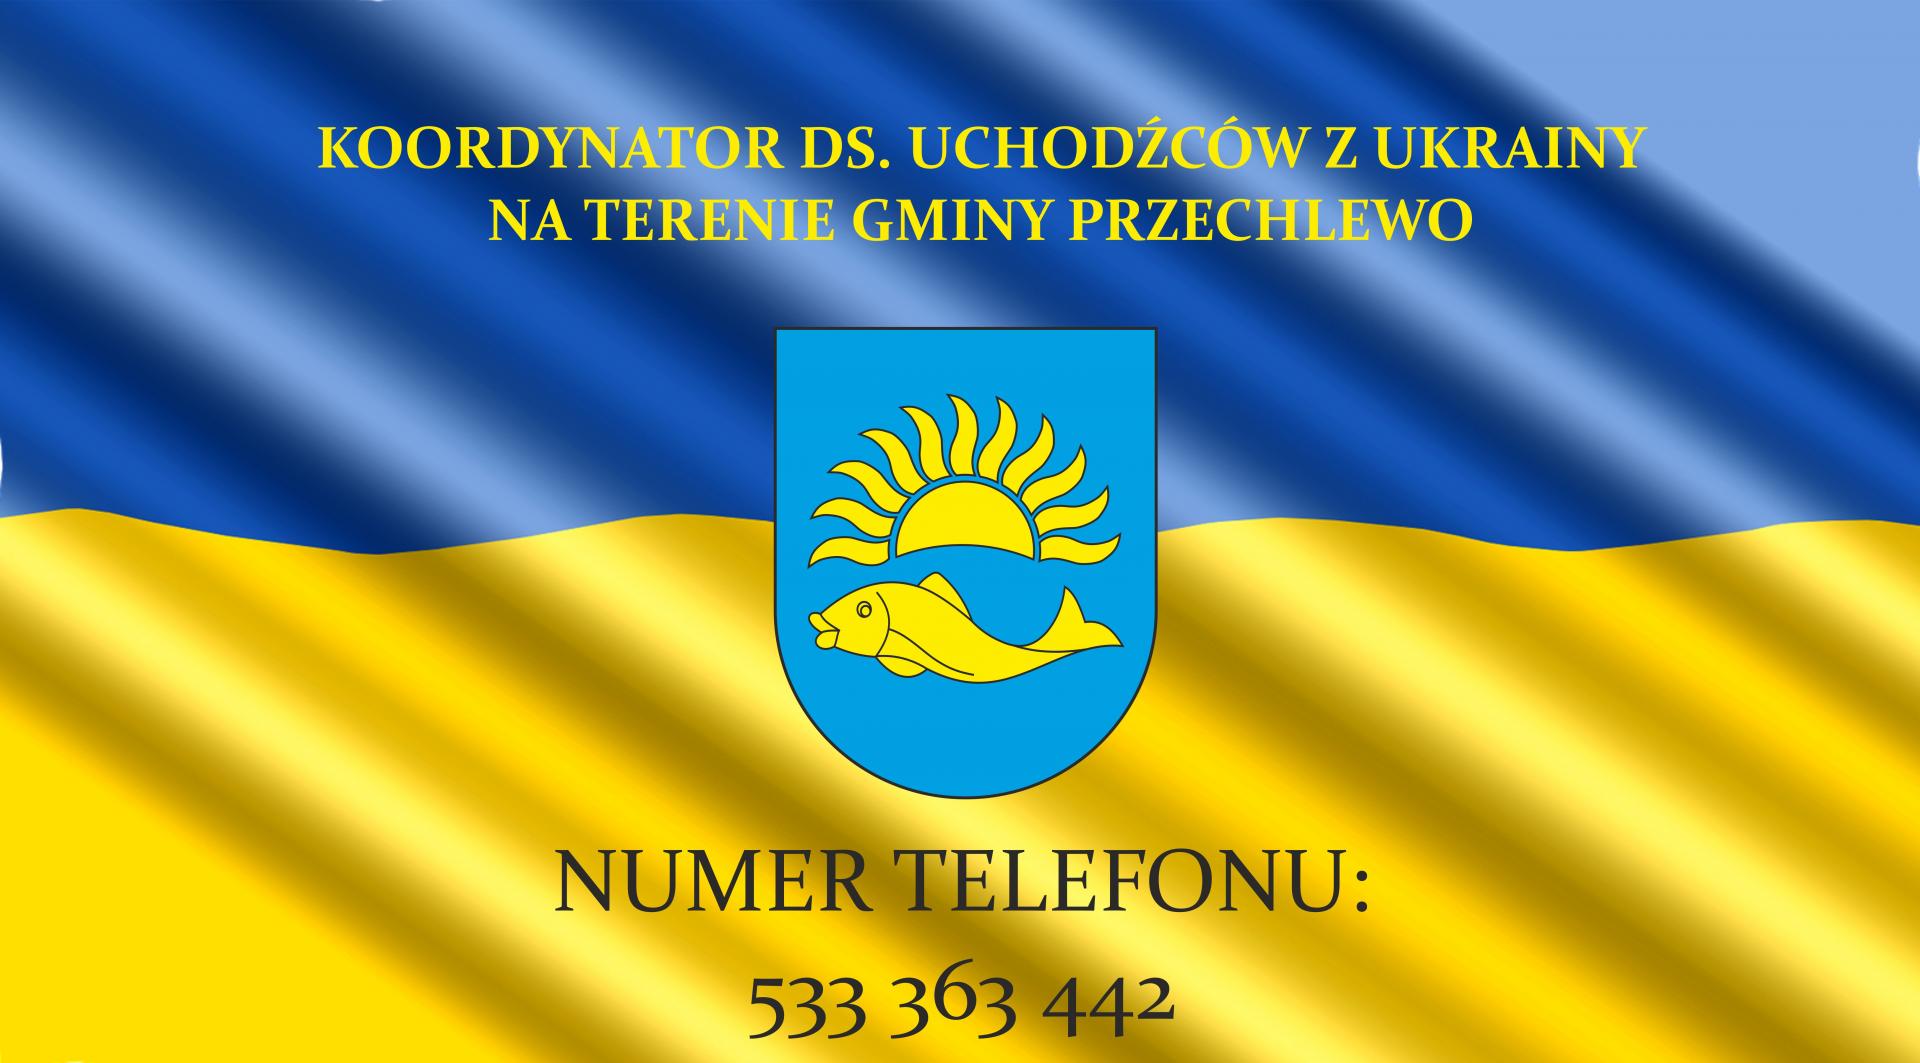 Koordynator ds. uchodźców z Ukrainy - kontakt